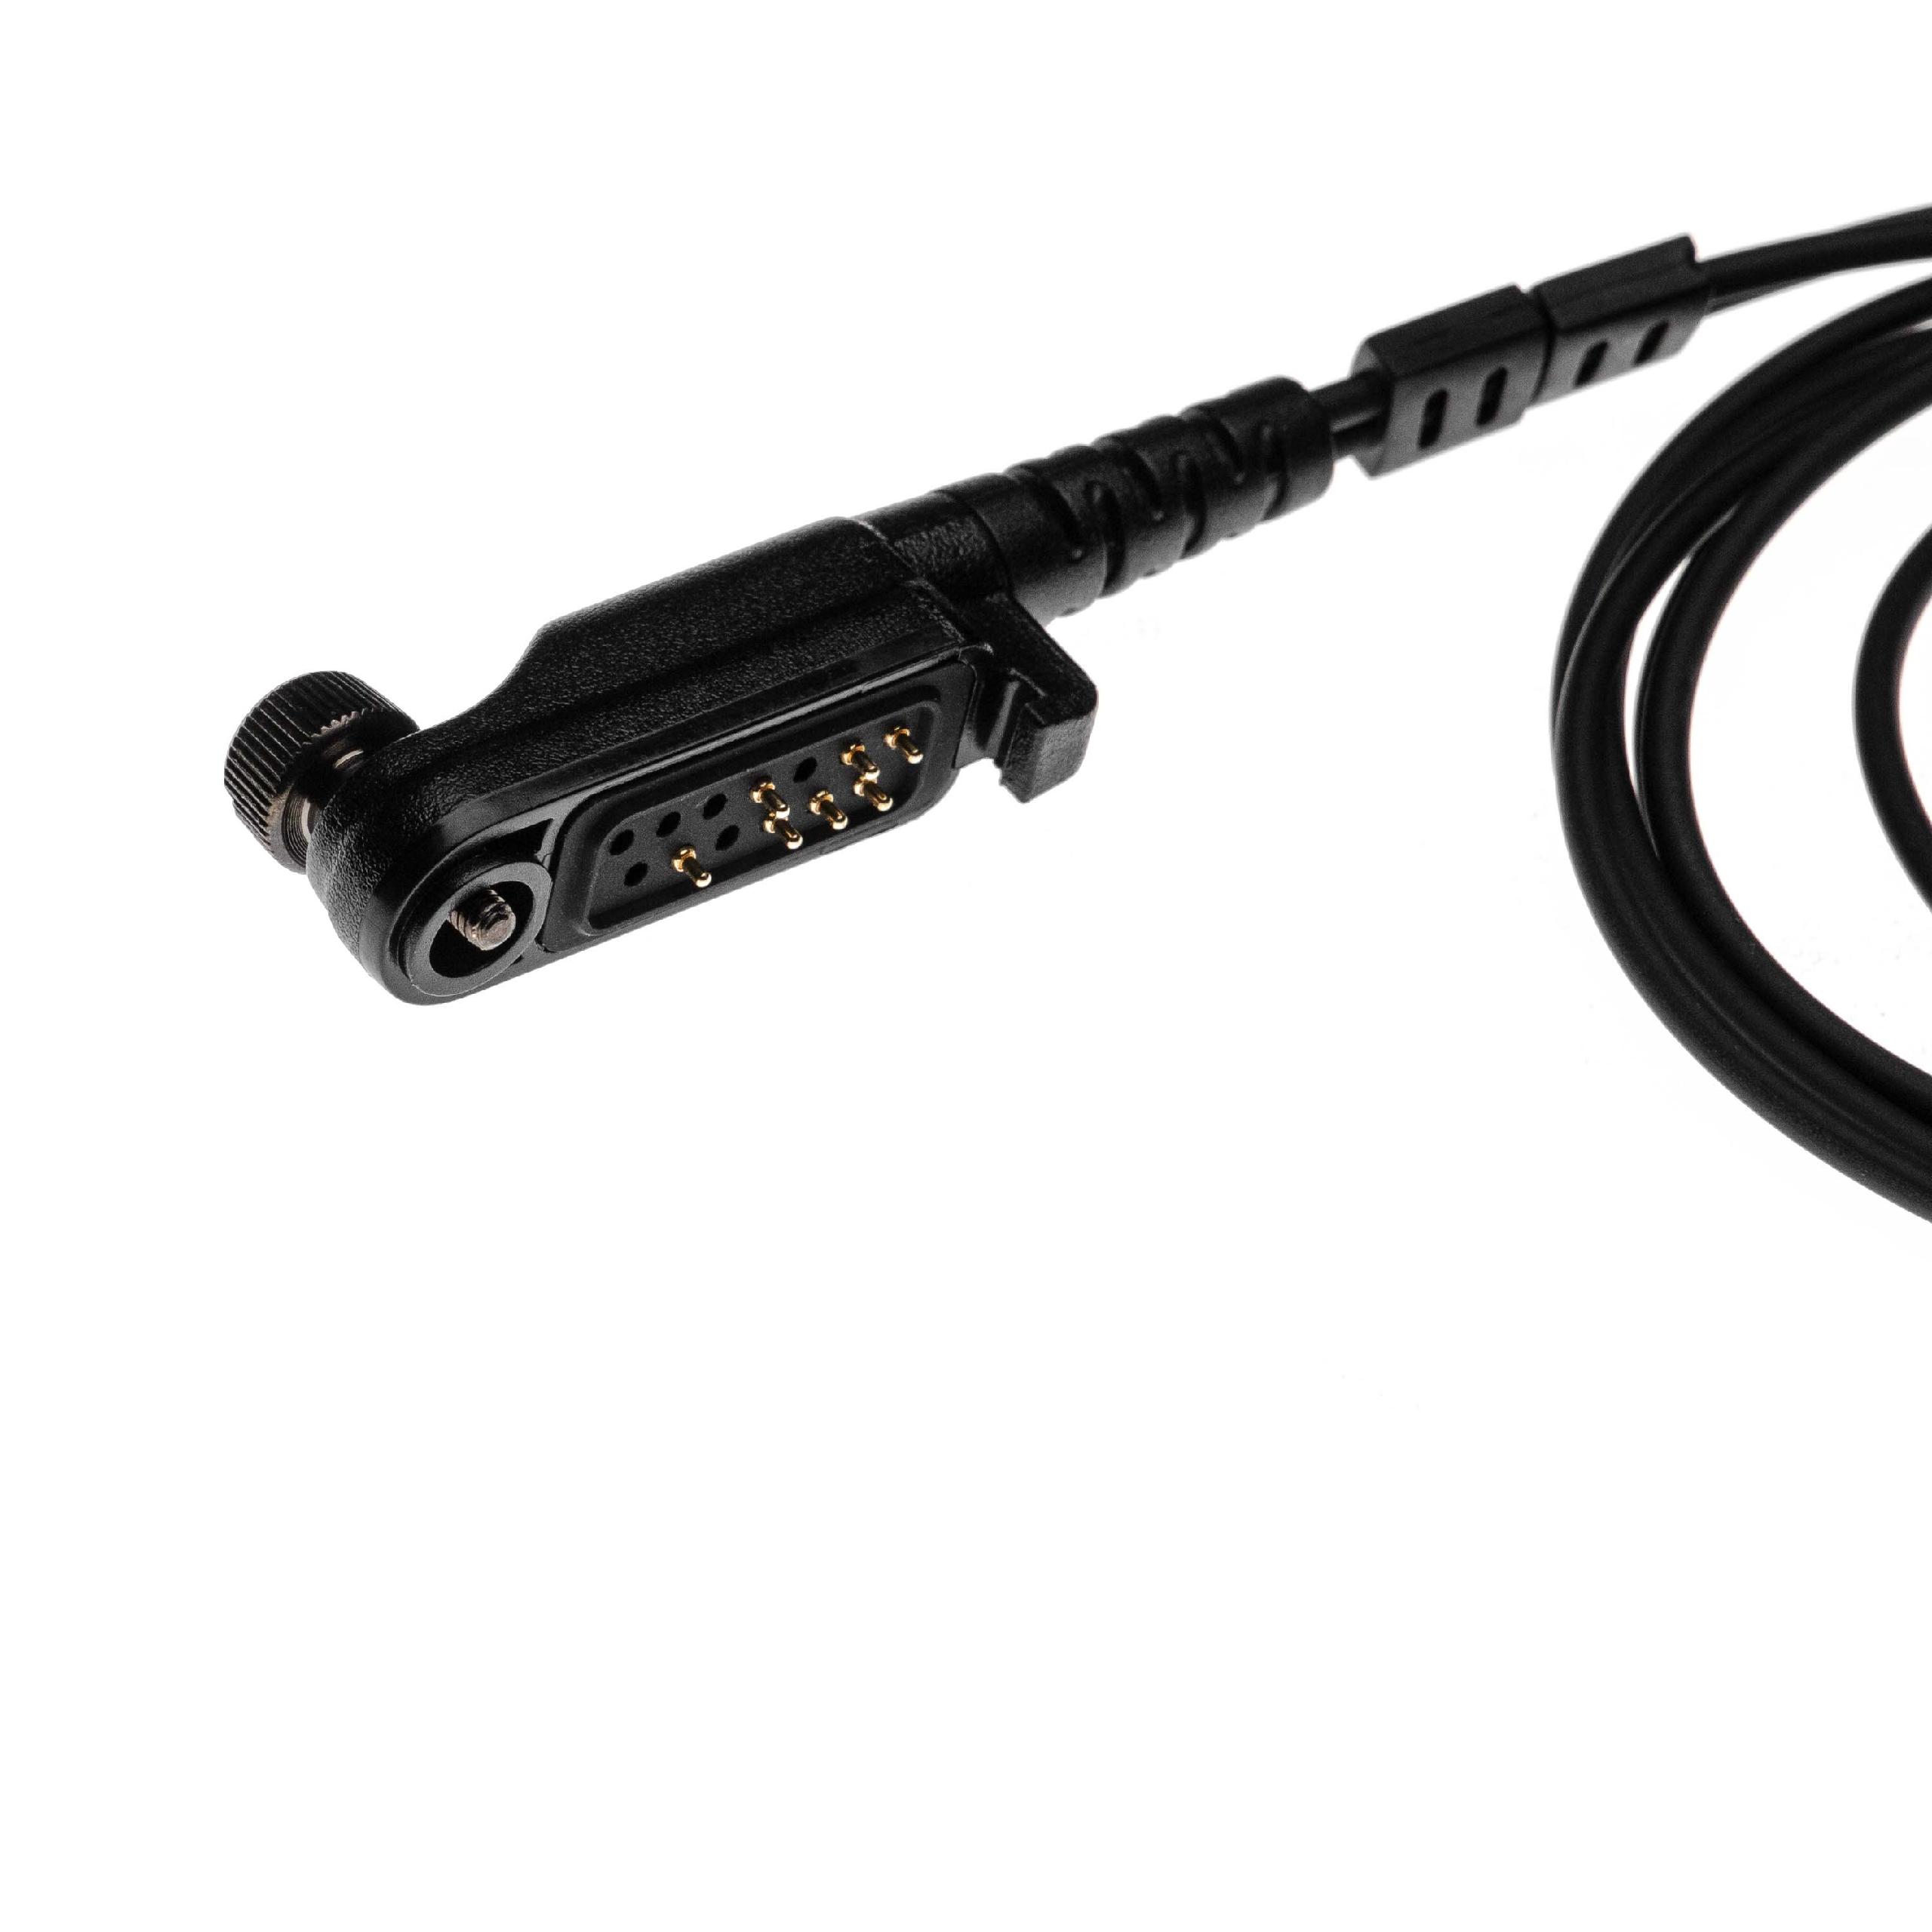 Auriculares para transceptor HYT/Hytera PD600 + micrófono push-to-talk + soporte clip + tubo acústico transpar